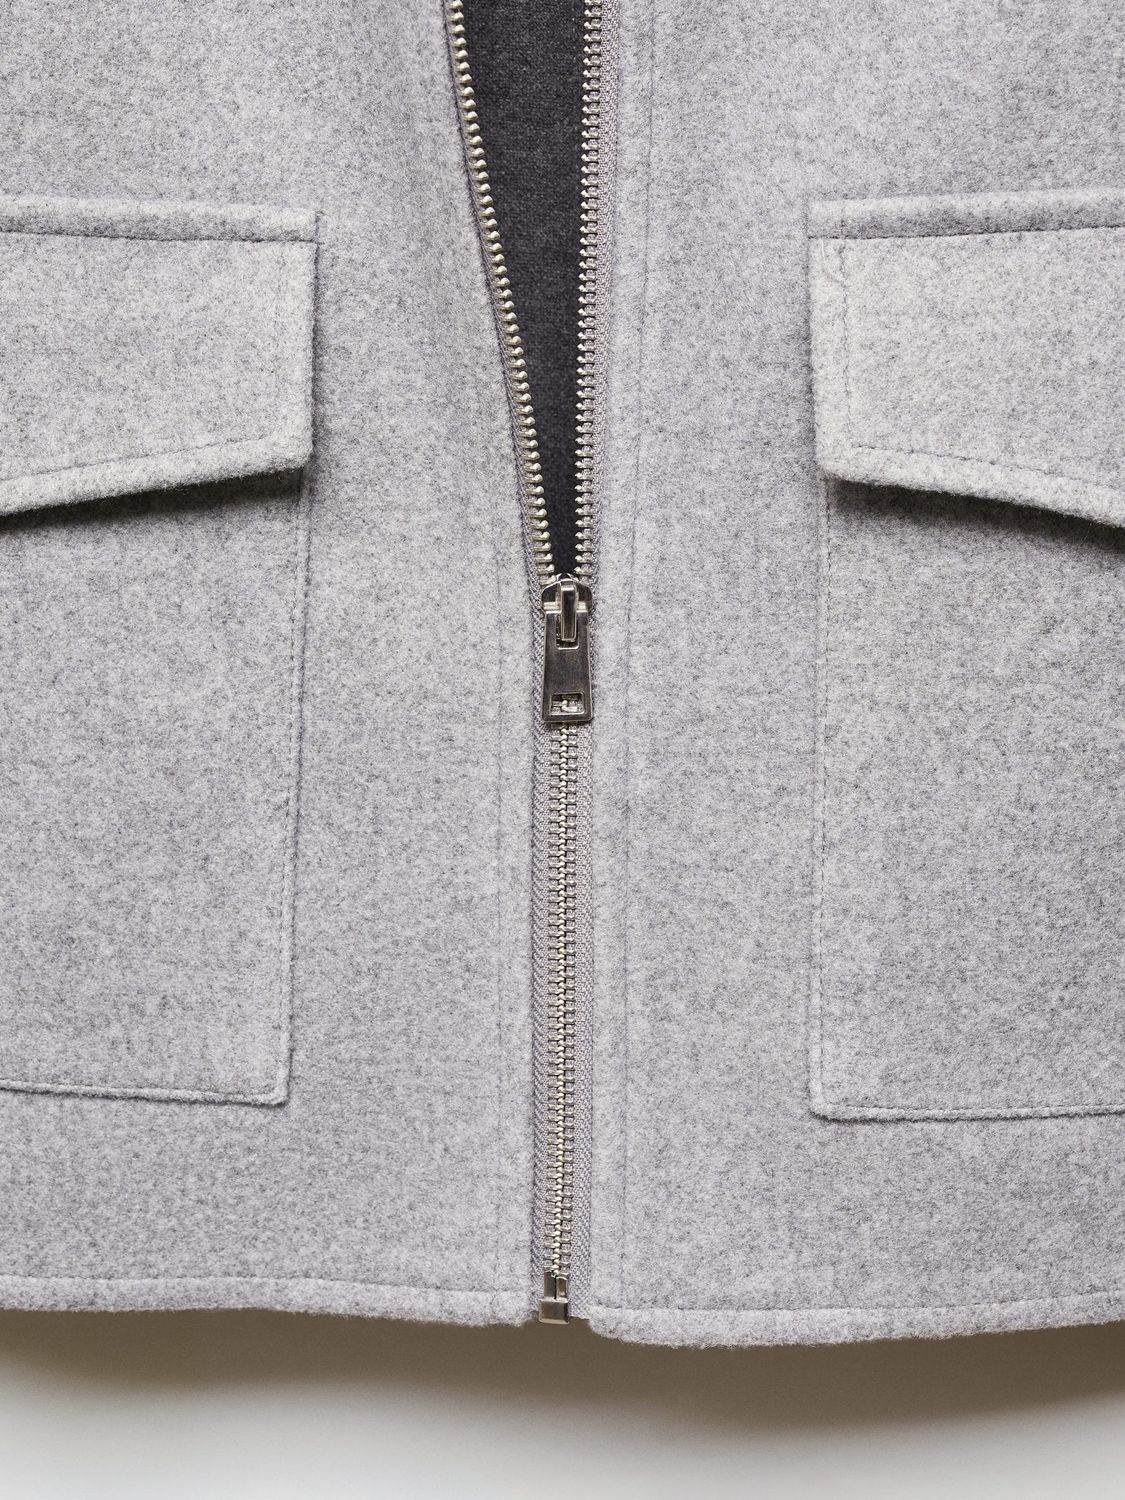 Mango Zipi Collar Jacket, Medium Grey, L